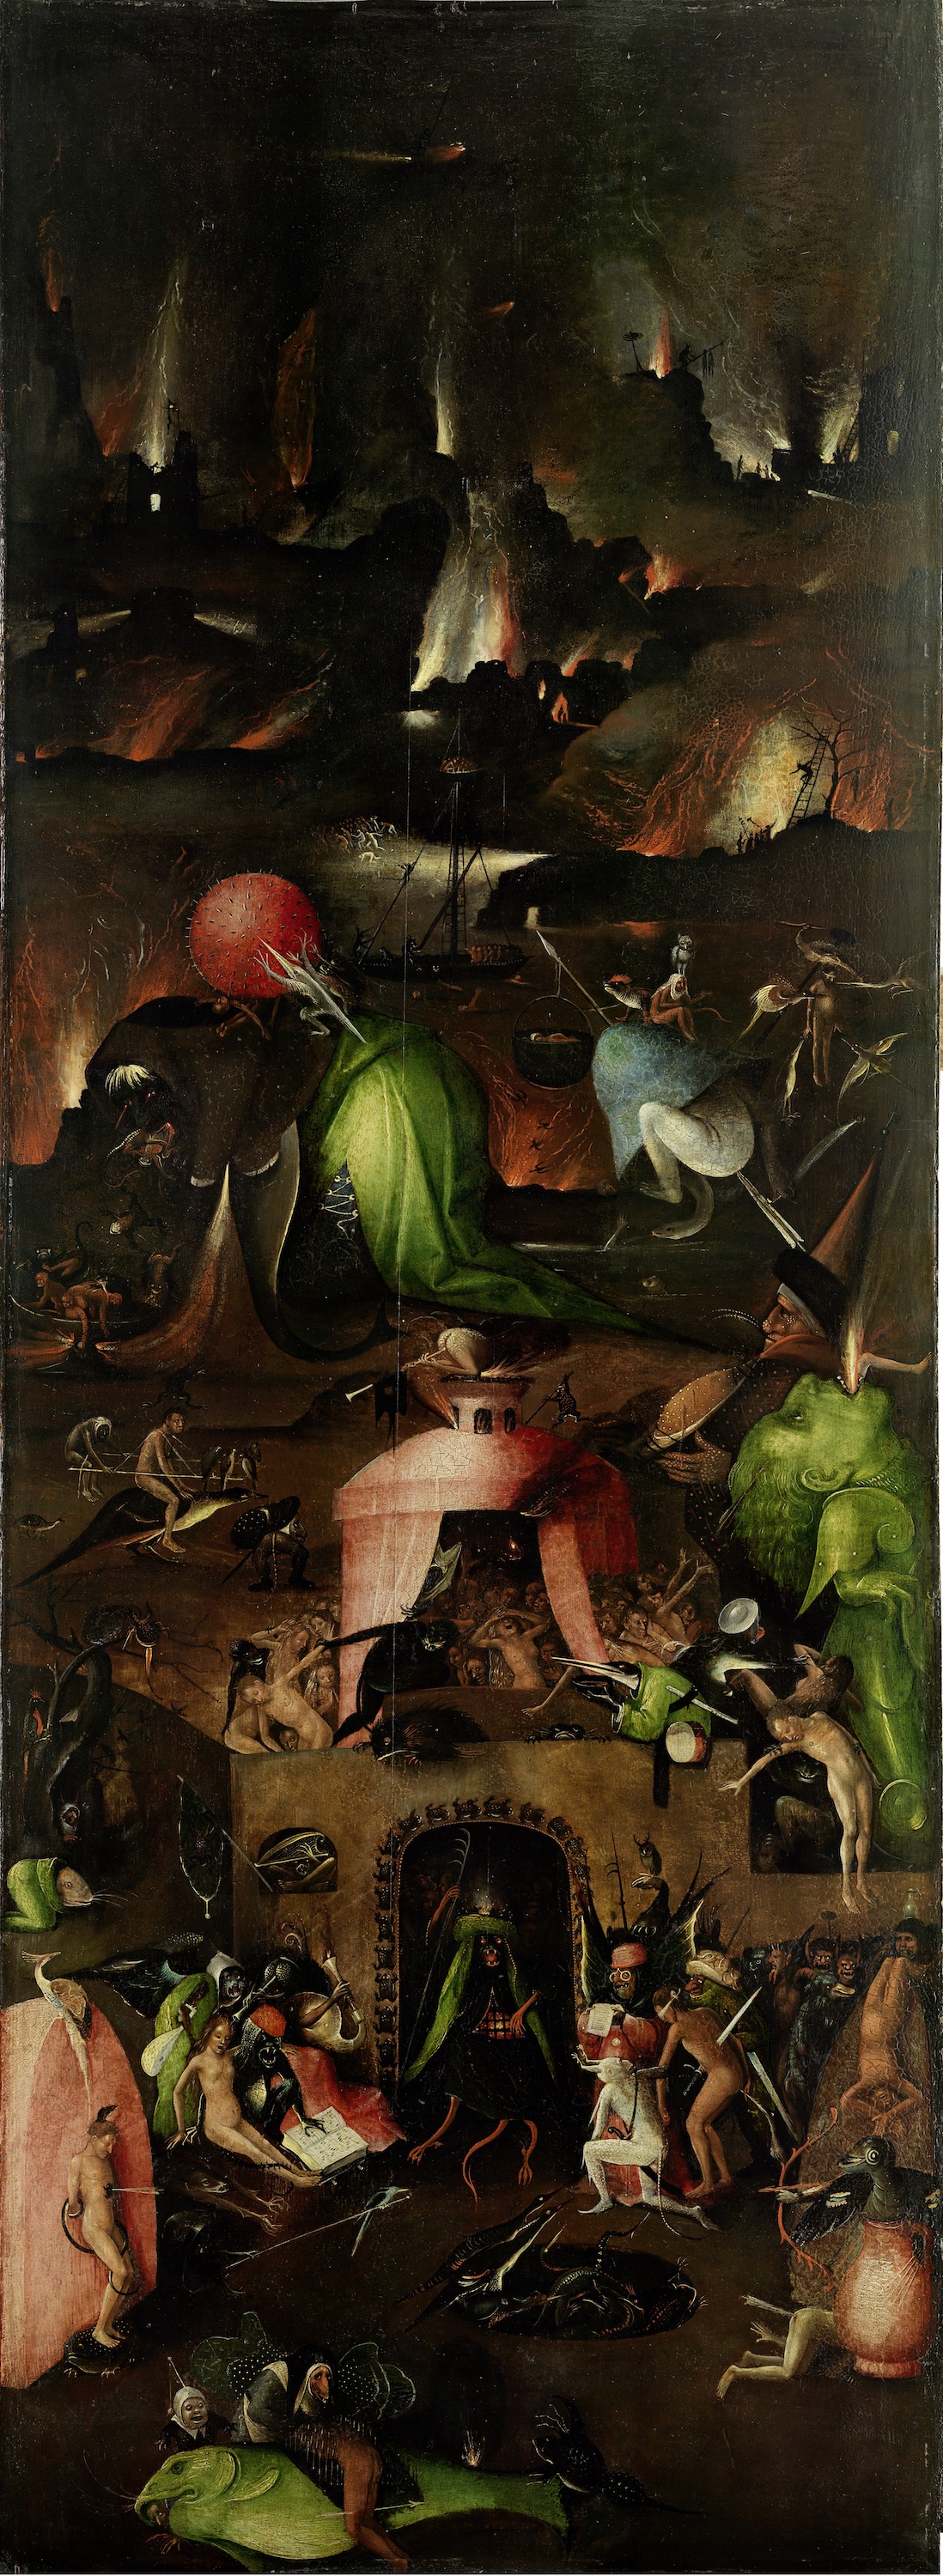 ثلاثية الحكم الأخير - اللوحة اليمنى by Hieronymus Bosch - c. 1500 